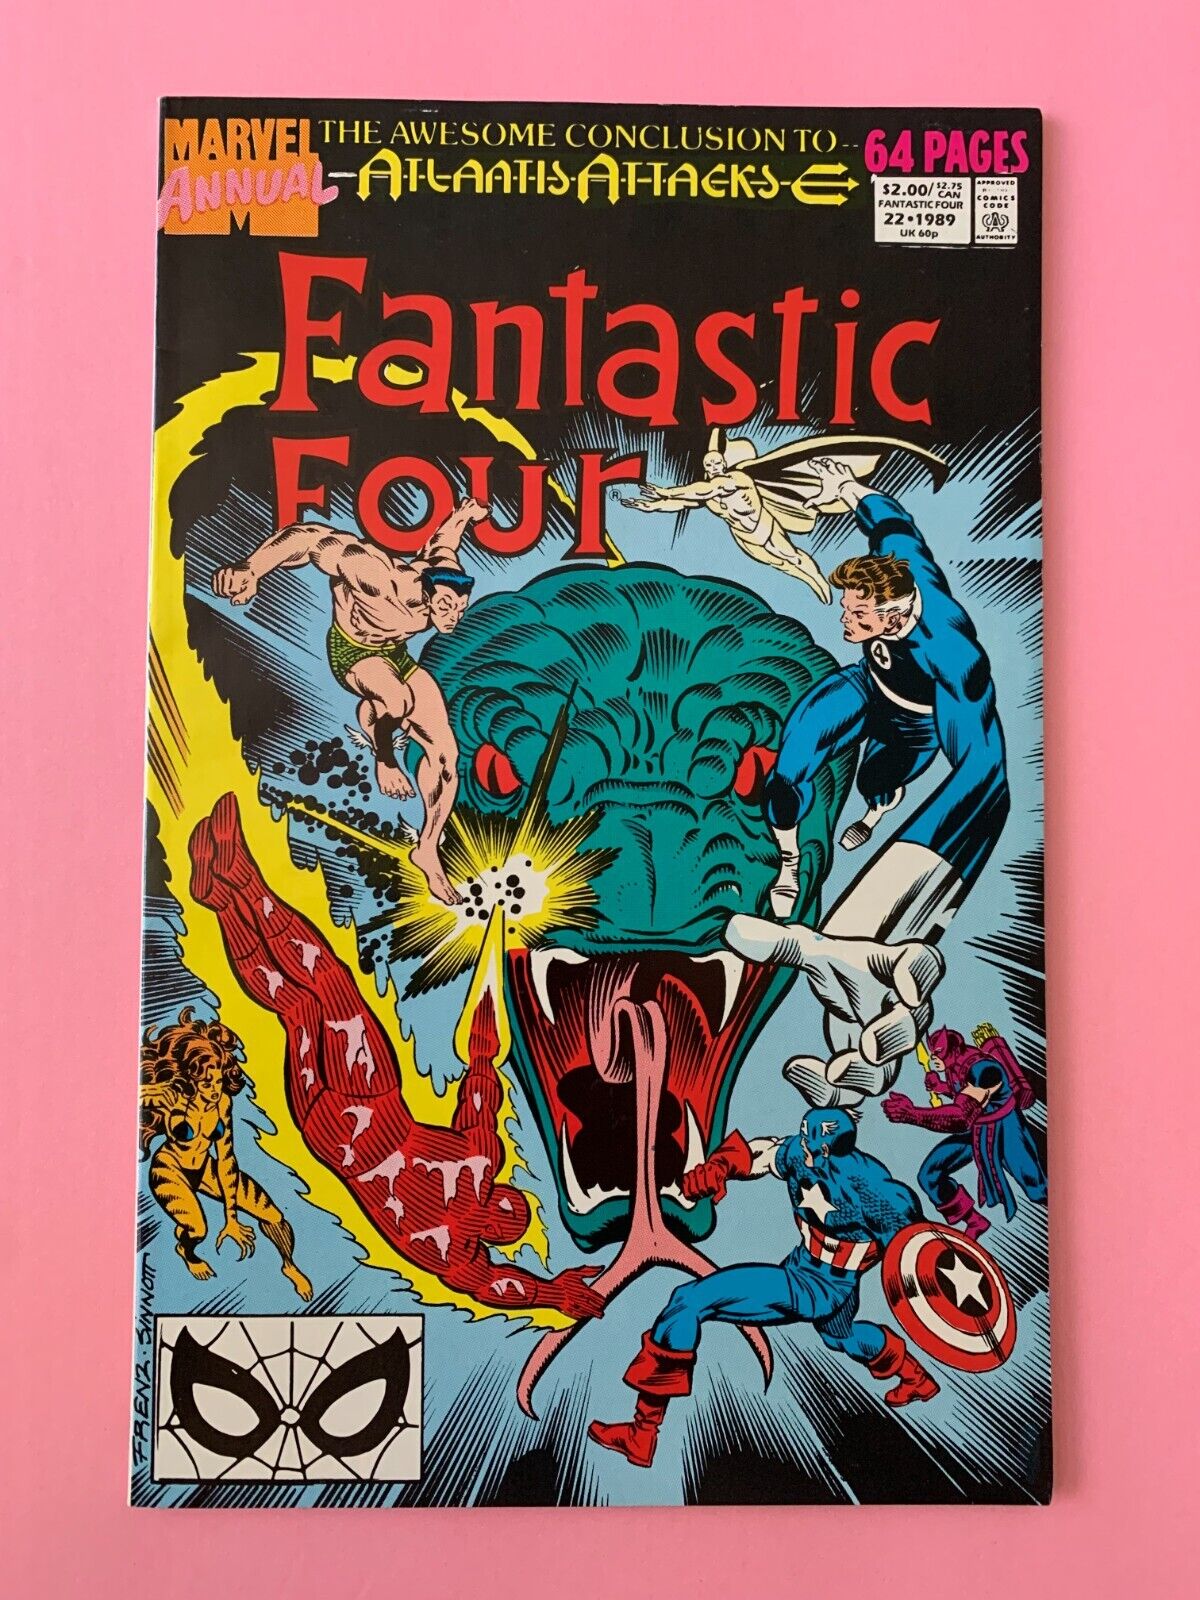 Fantastic Four Annual #22 - 1989 - Vol.1            (5180)